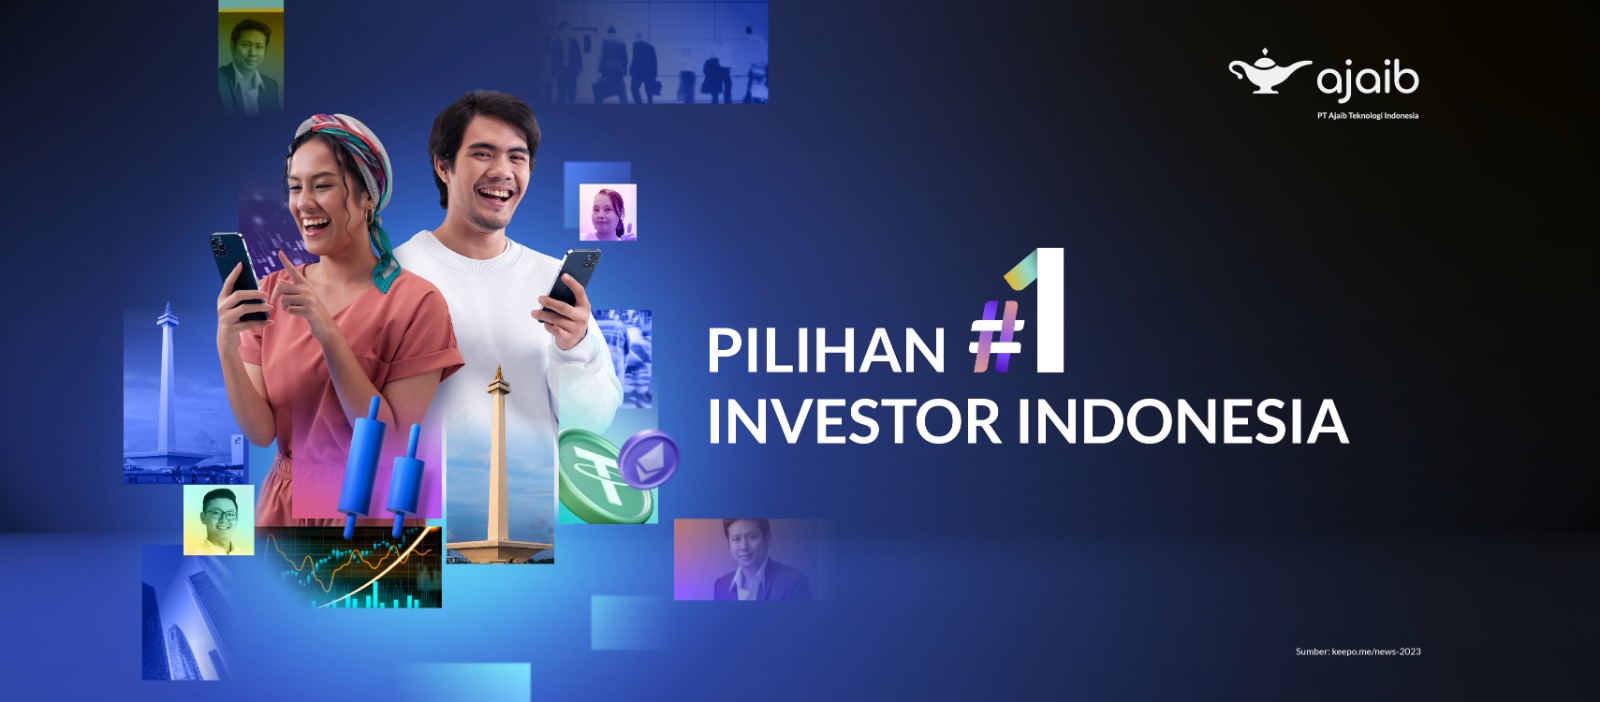 Jadi Aplikasi Pilihan #1 Investor Indonesia, Ajaib Hadirkan Beragam Promo di Ajaib Fest 2023